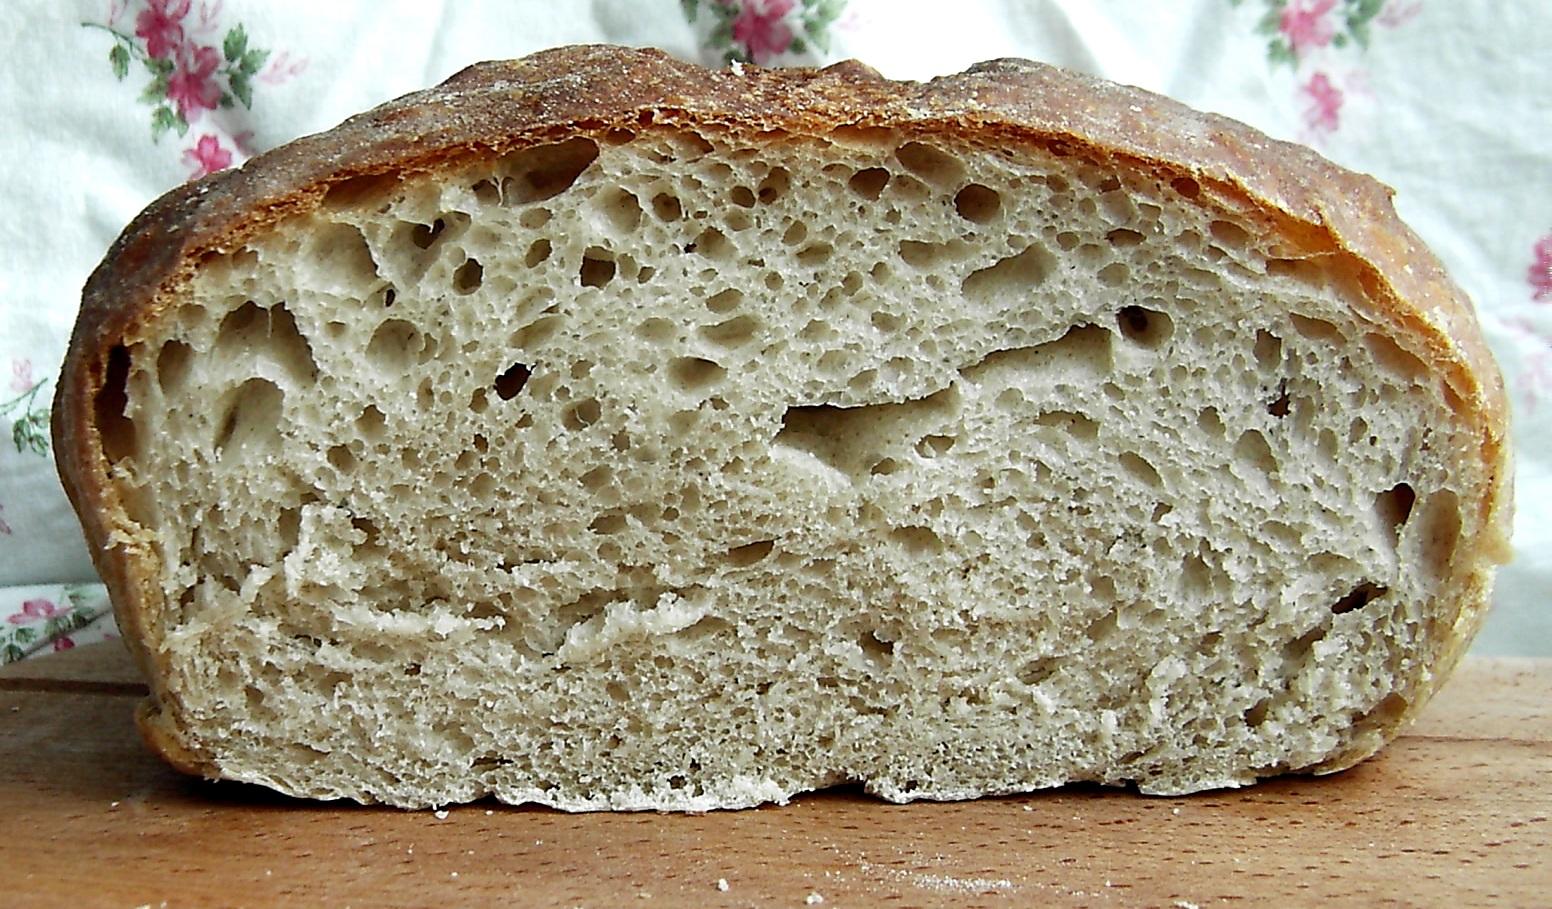 قشرة الخبز - الصعوبات الشائعة